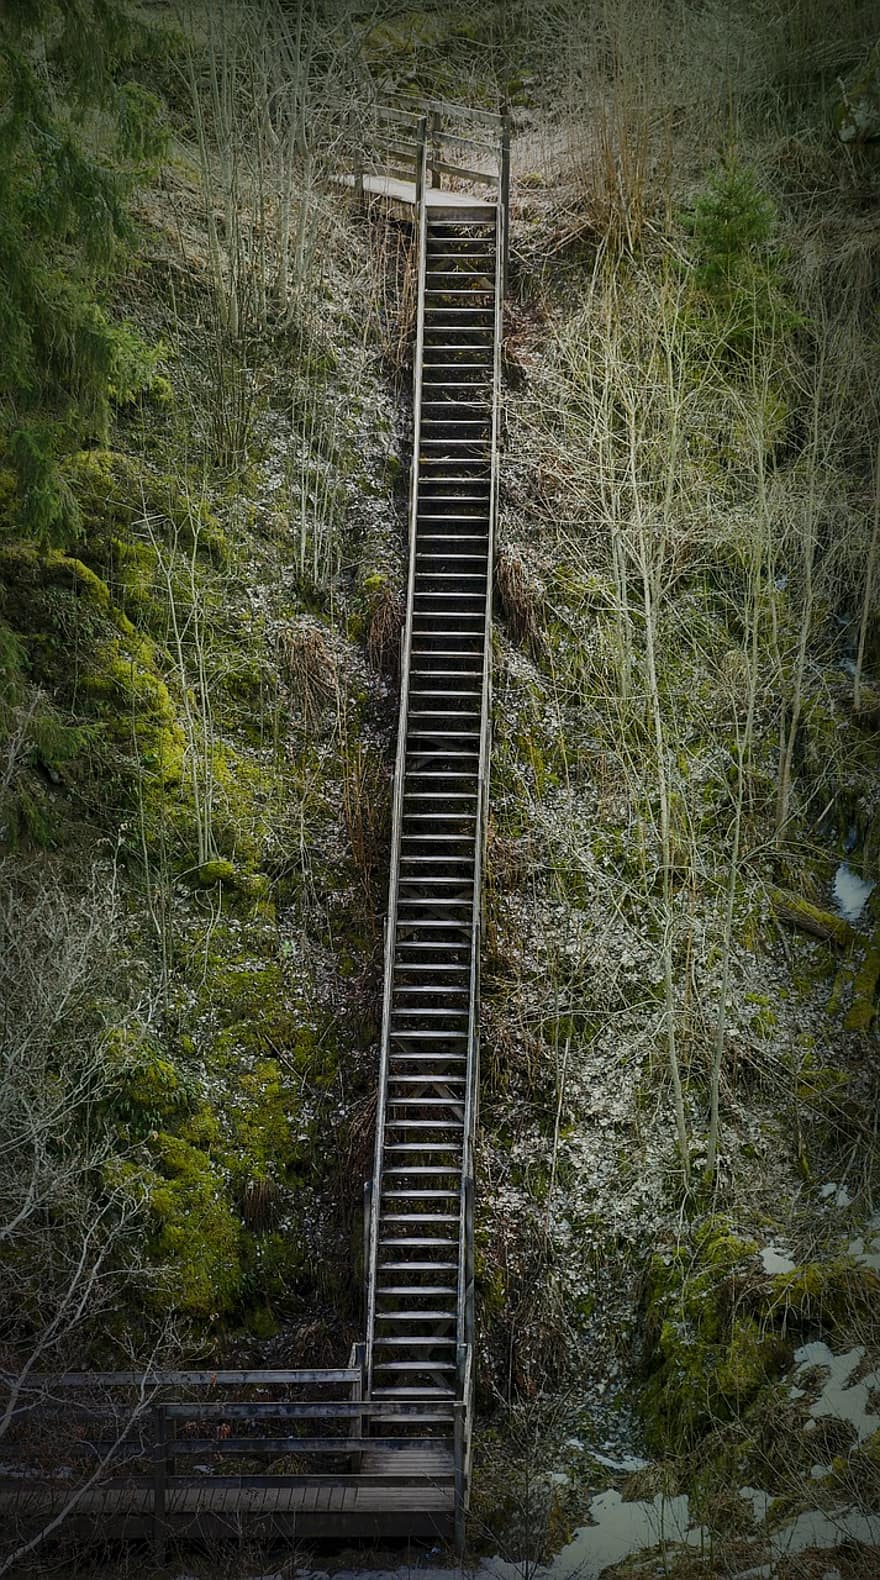 cầu thang bộ, cầu thang, rừng, cây, sườn dốc, gỗ, lối đi bộ, các bước, cảnh nông thôn, màu xanh lục, phong cảnh